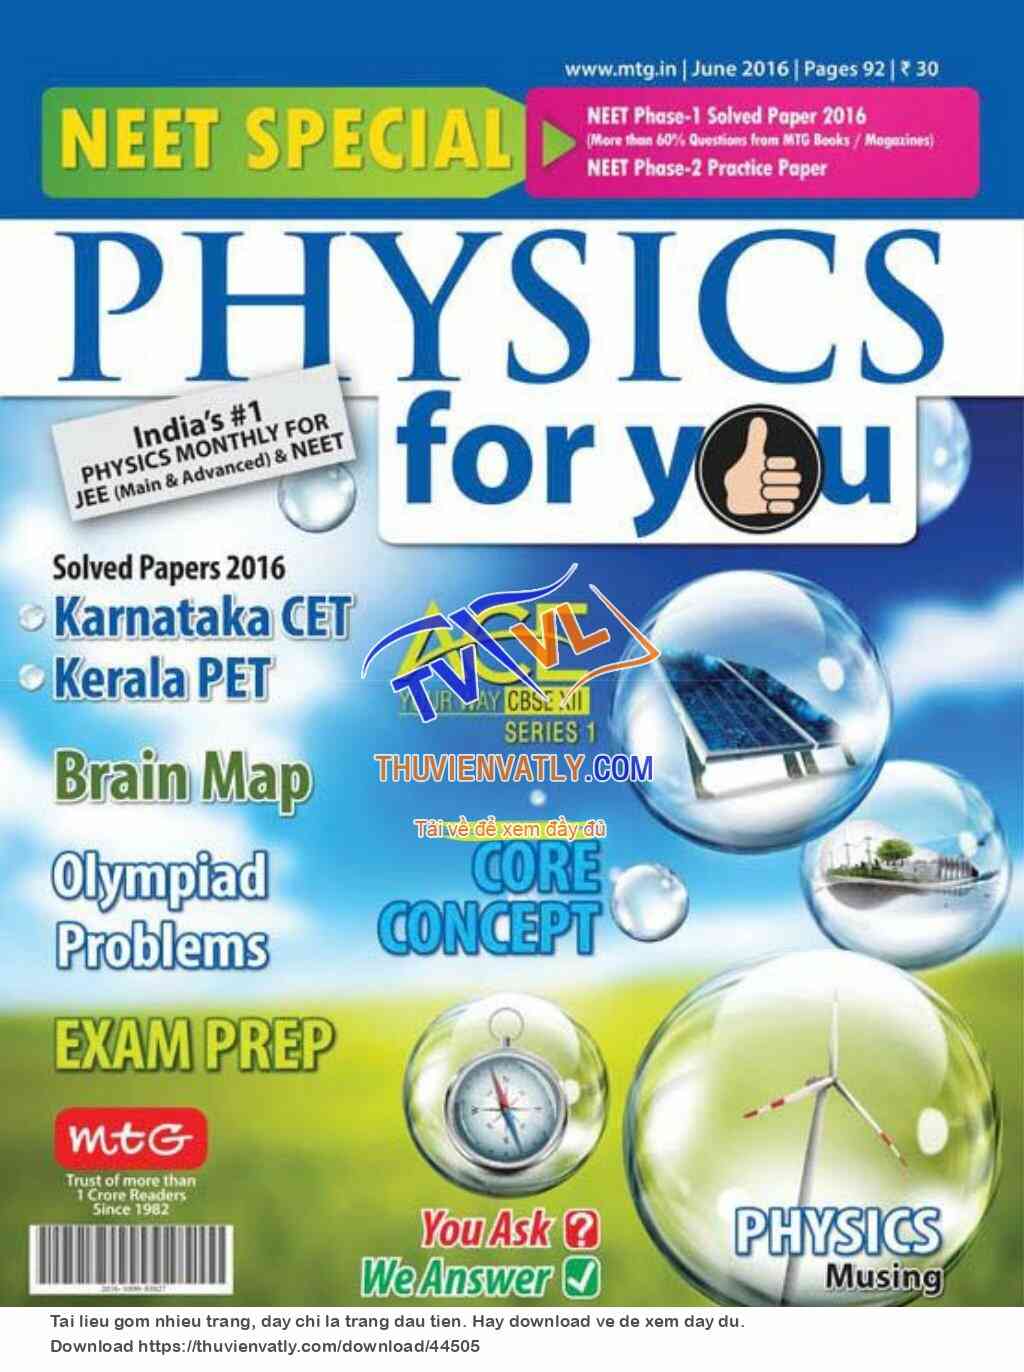 Tạp chí Physics For You, tháng 6/2016